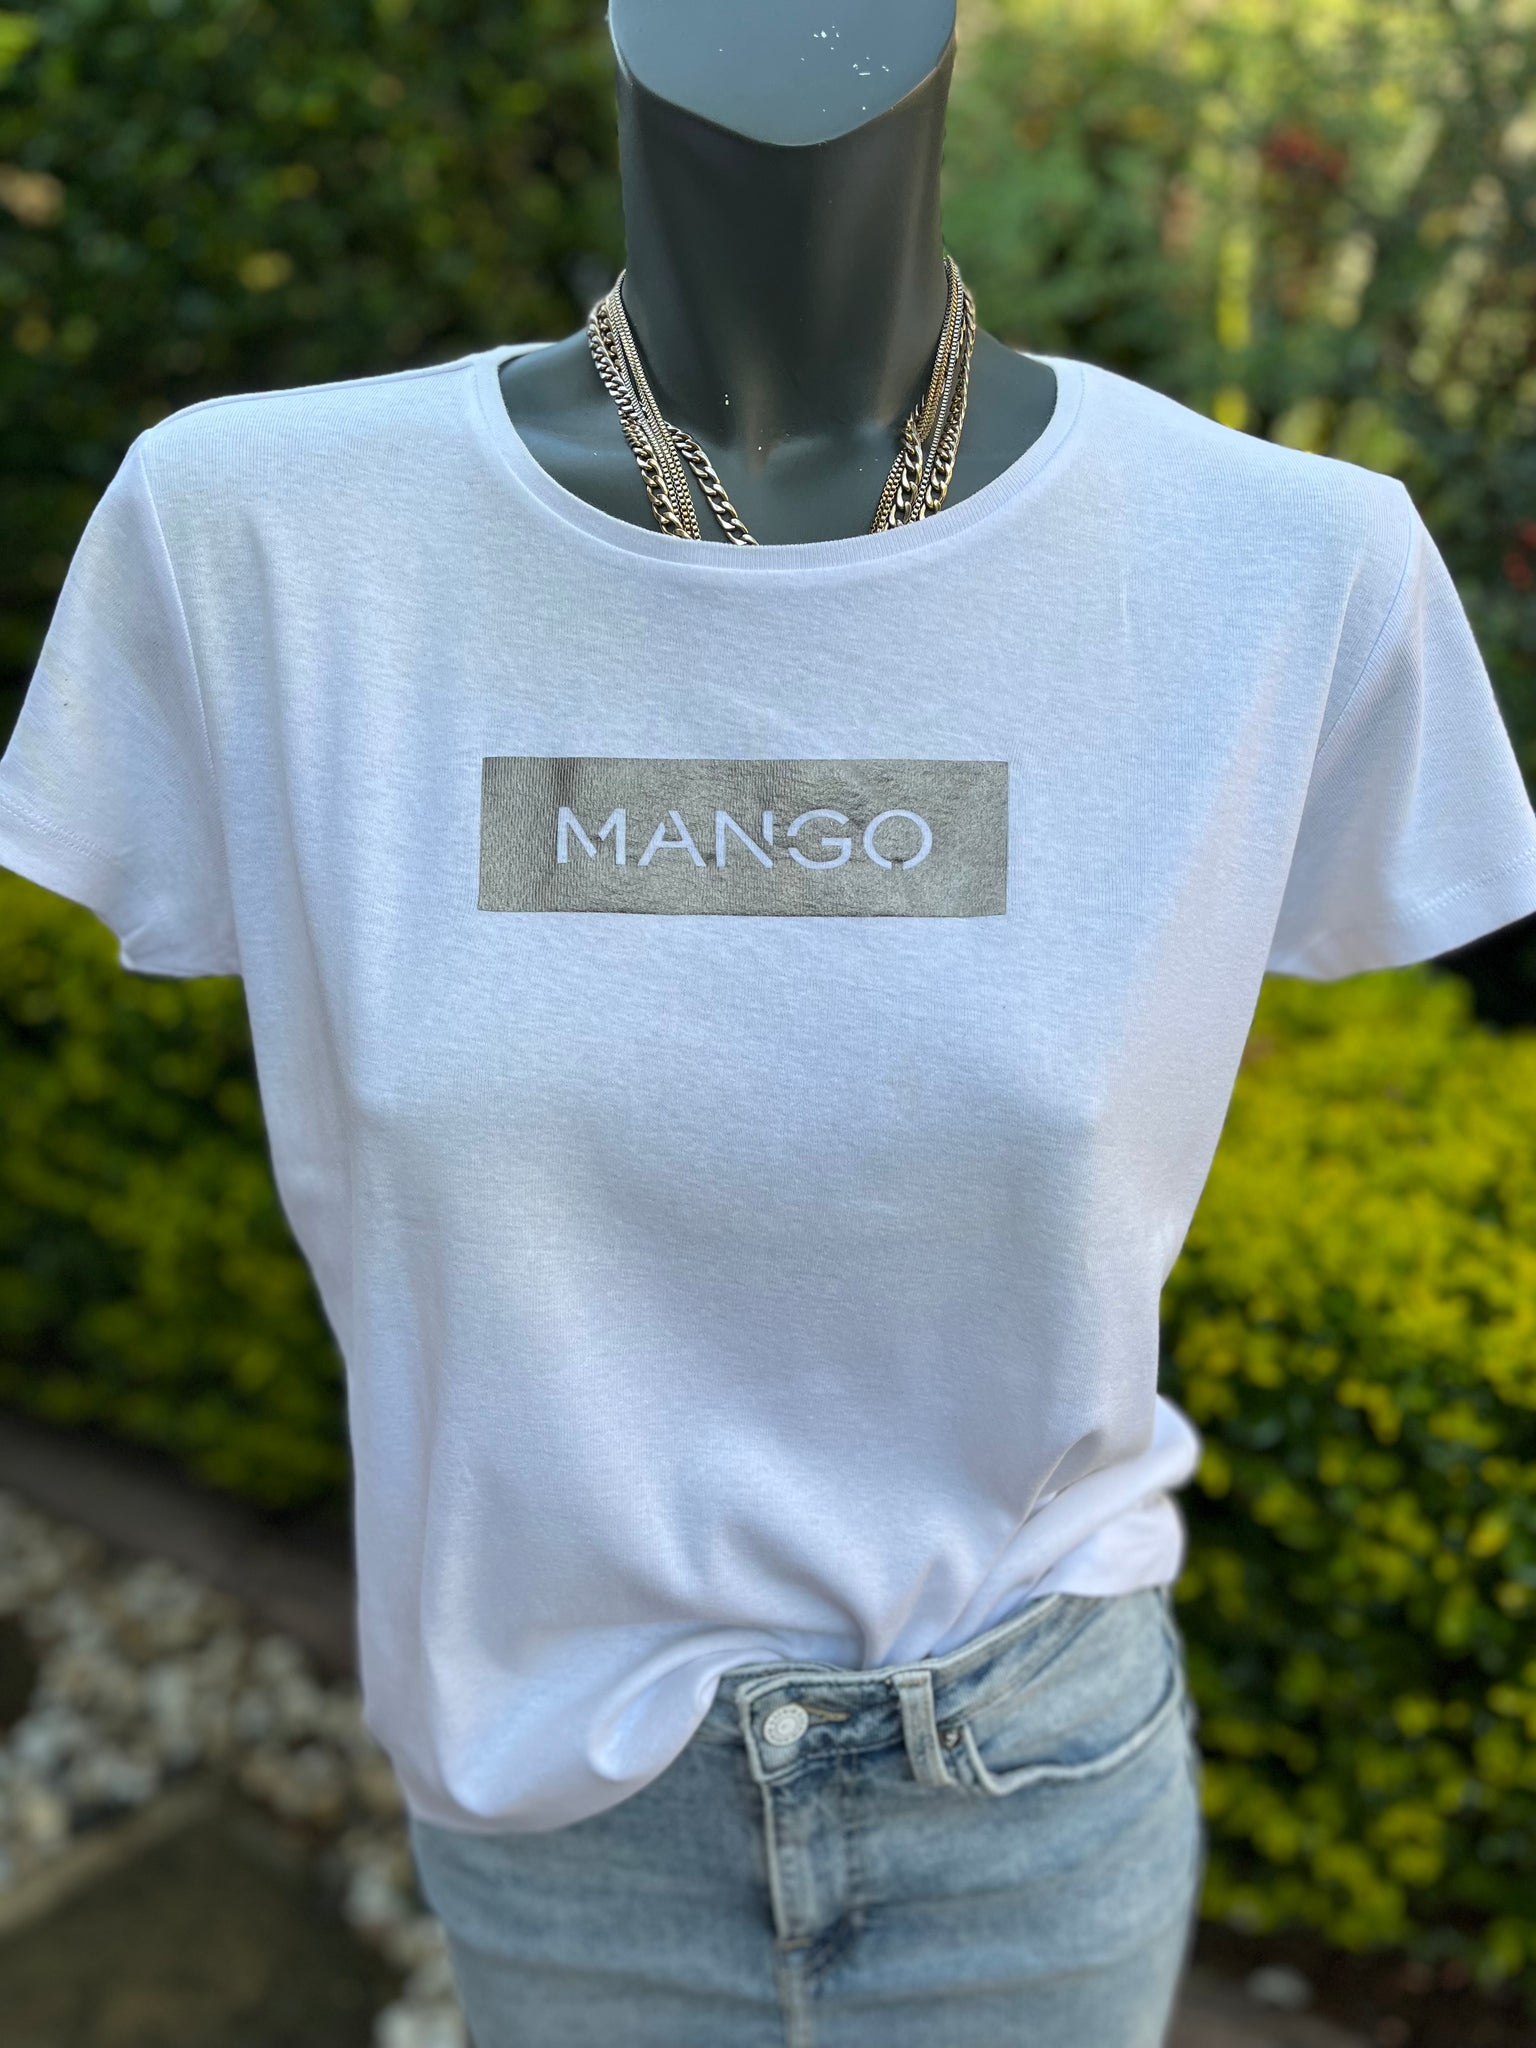 Mango White Graphic Tee - Size Large